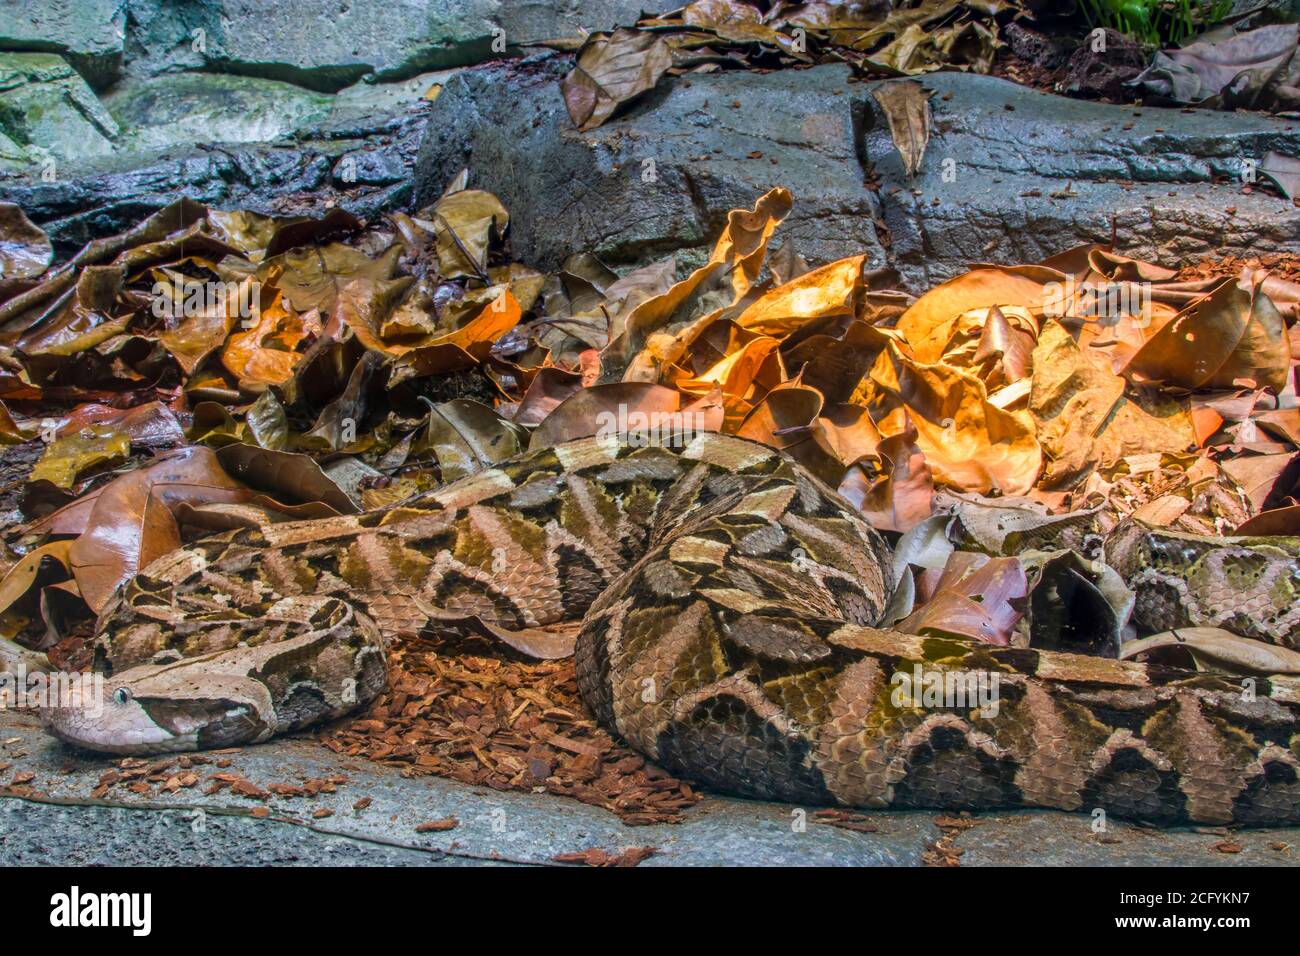 La vipère de Gaboon (Bitis gabonica) est une espèce de vipère que l'on trouve dans les forêts tropicales et les savanes d'Afrique subsaharienne. Comme tous les vipers, c'est venimeux. Banque D'Images